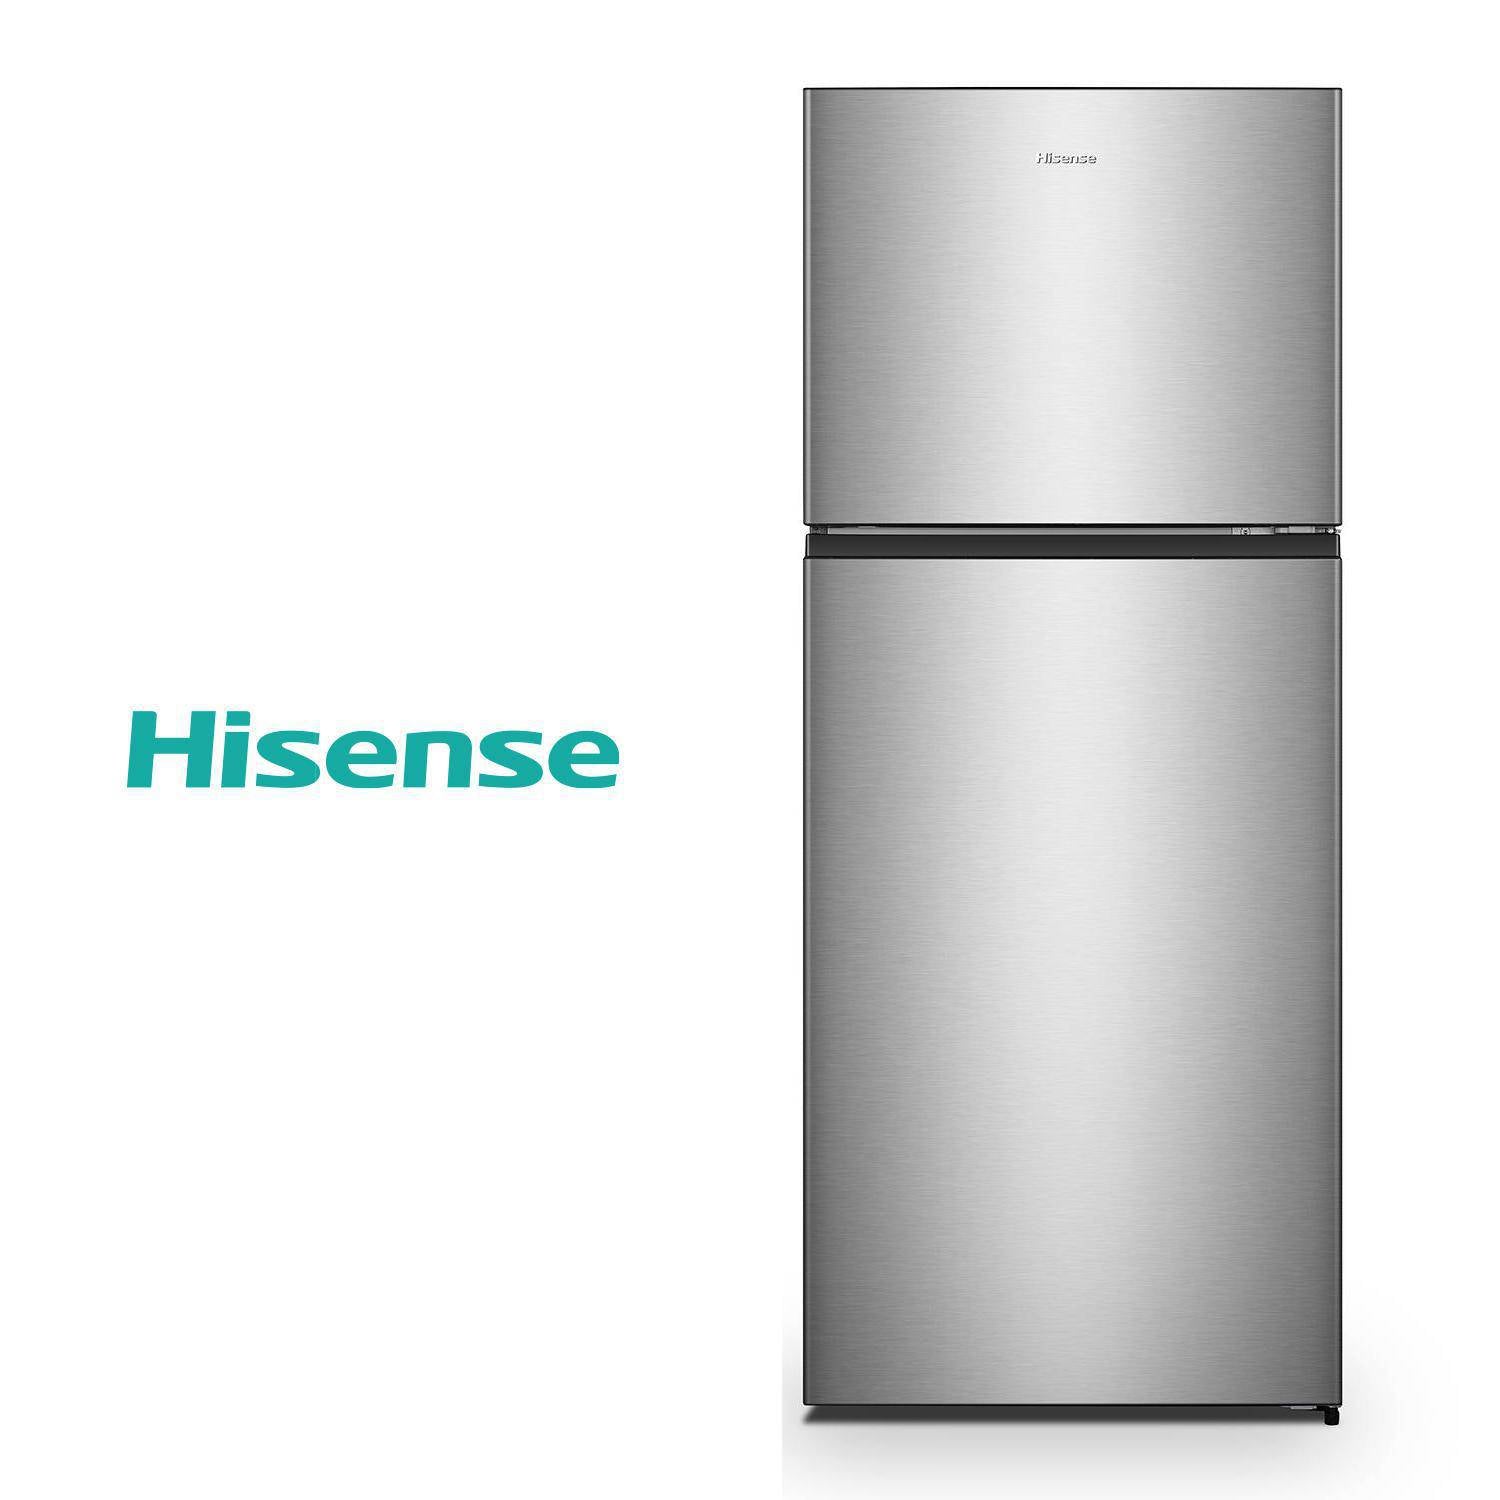 Refrigerador Hisense Top Freezer No Frost Rd-49Wrd Elegance Inox 375 Lts [Producto Openbox] [Nwr]